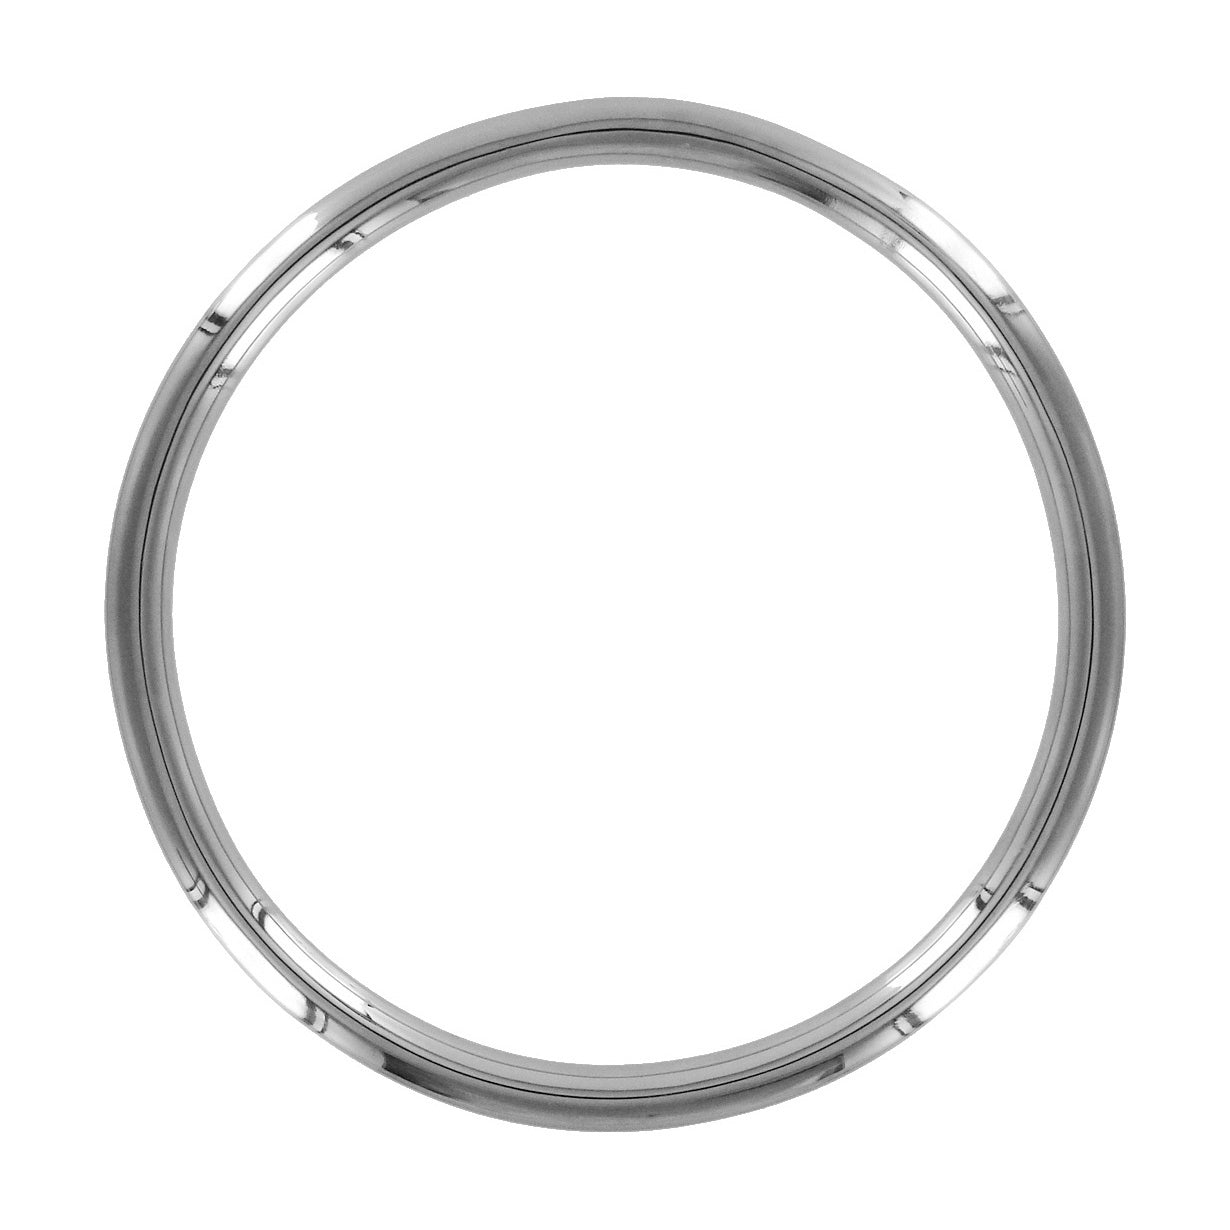 Shibari Rope Bondage Ring